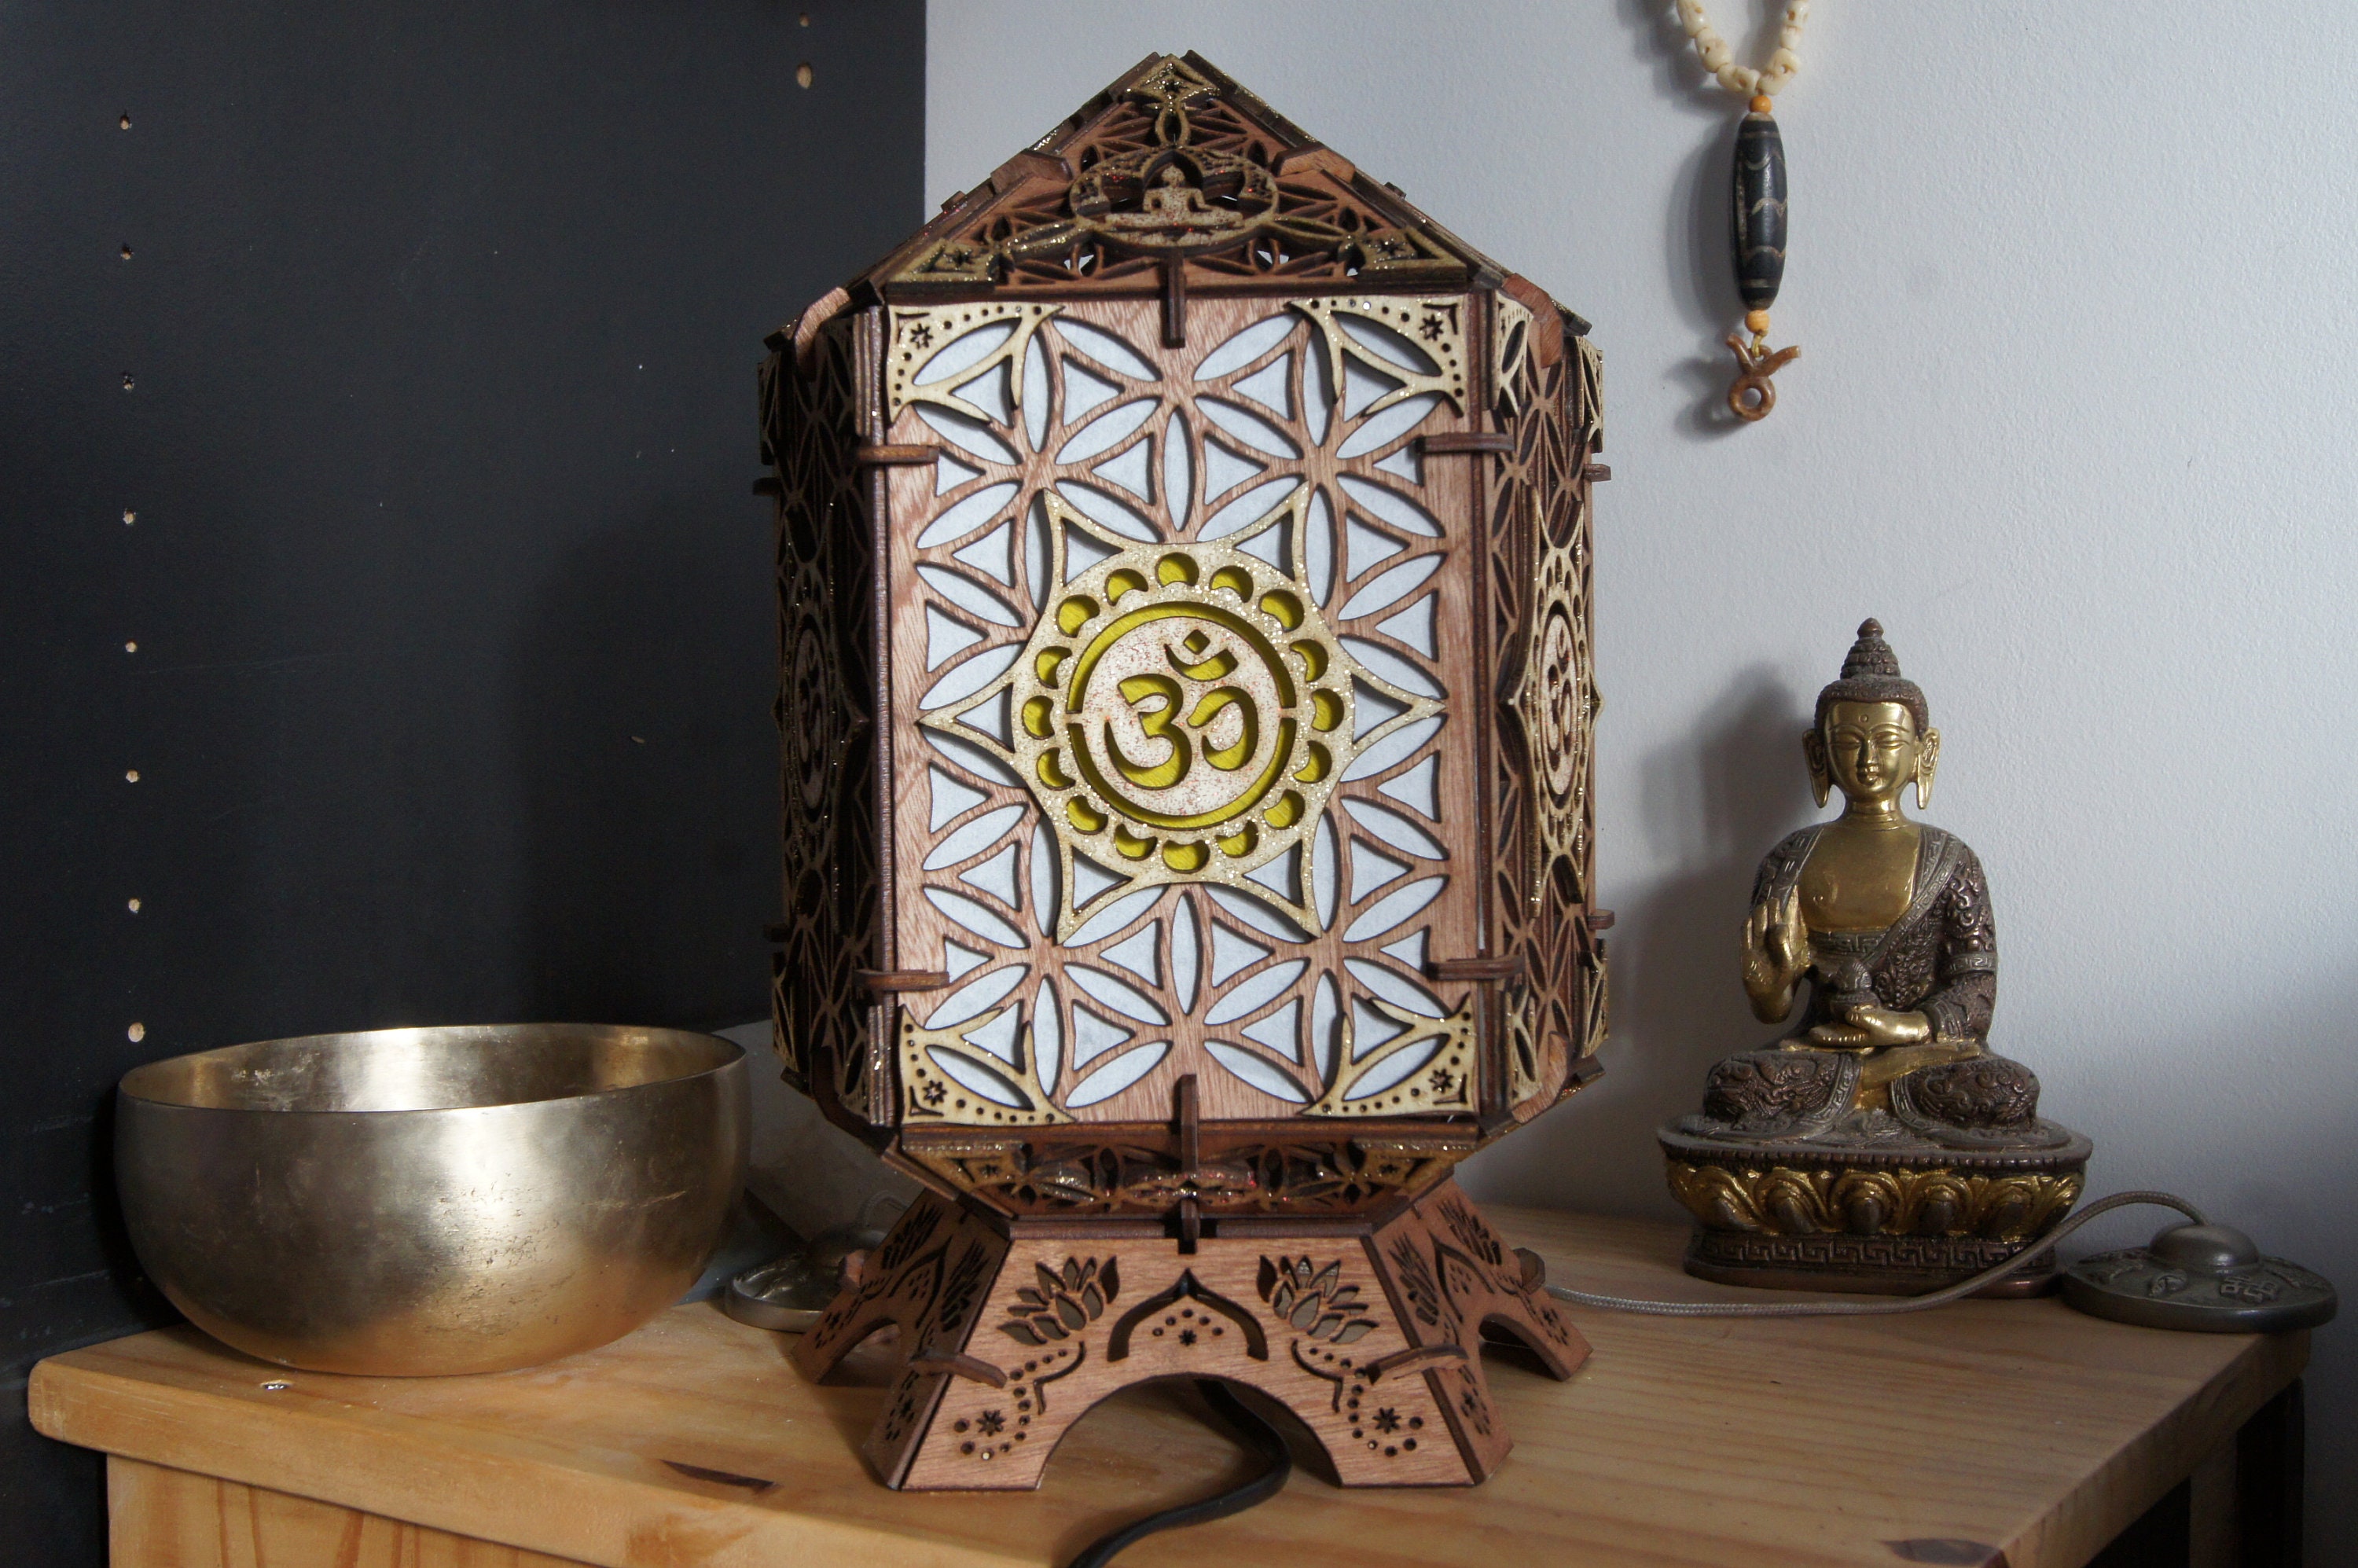 Lampe en Bois, Décoration Zen, Ohm, Bouddha. Lampe de Chevet, Salon ou Chambre.